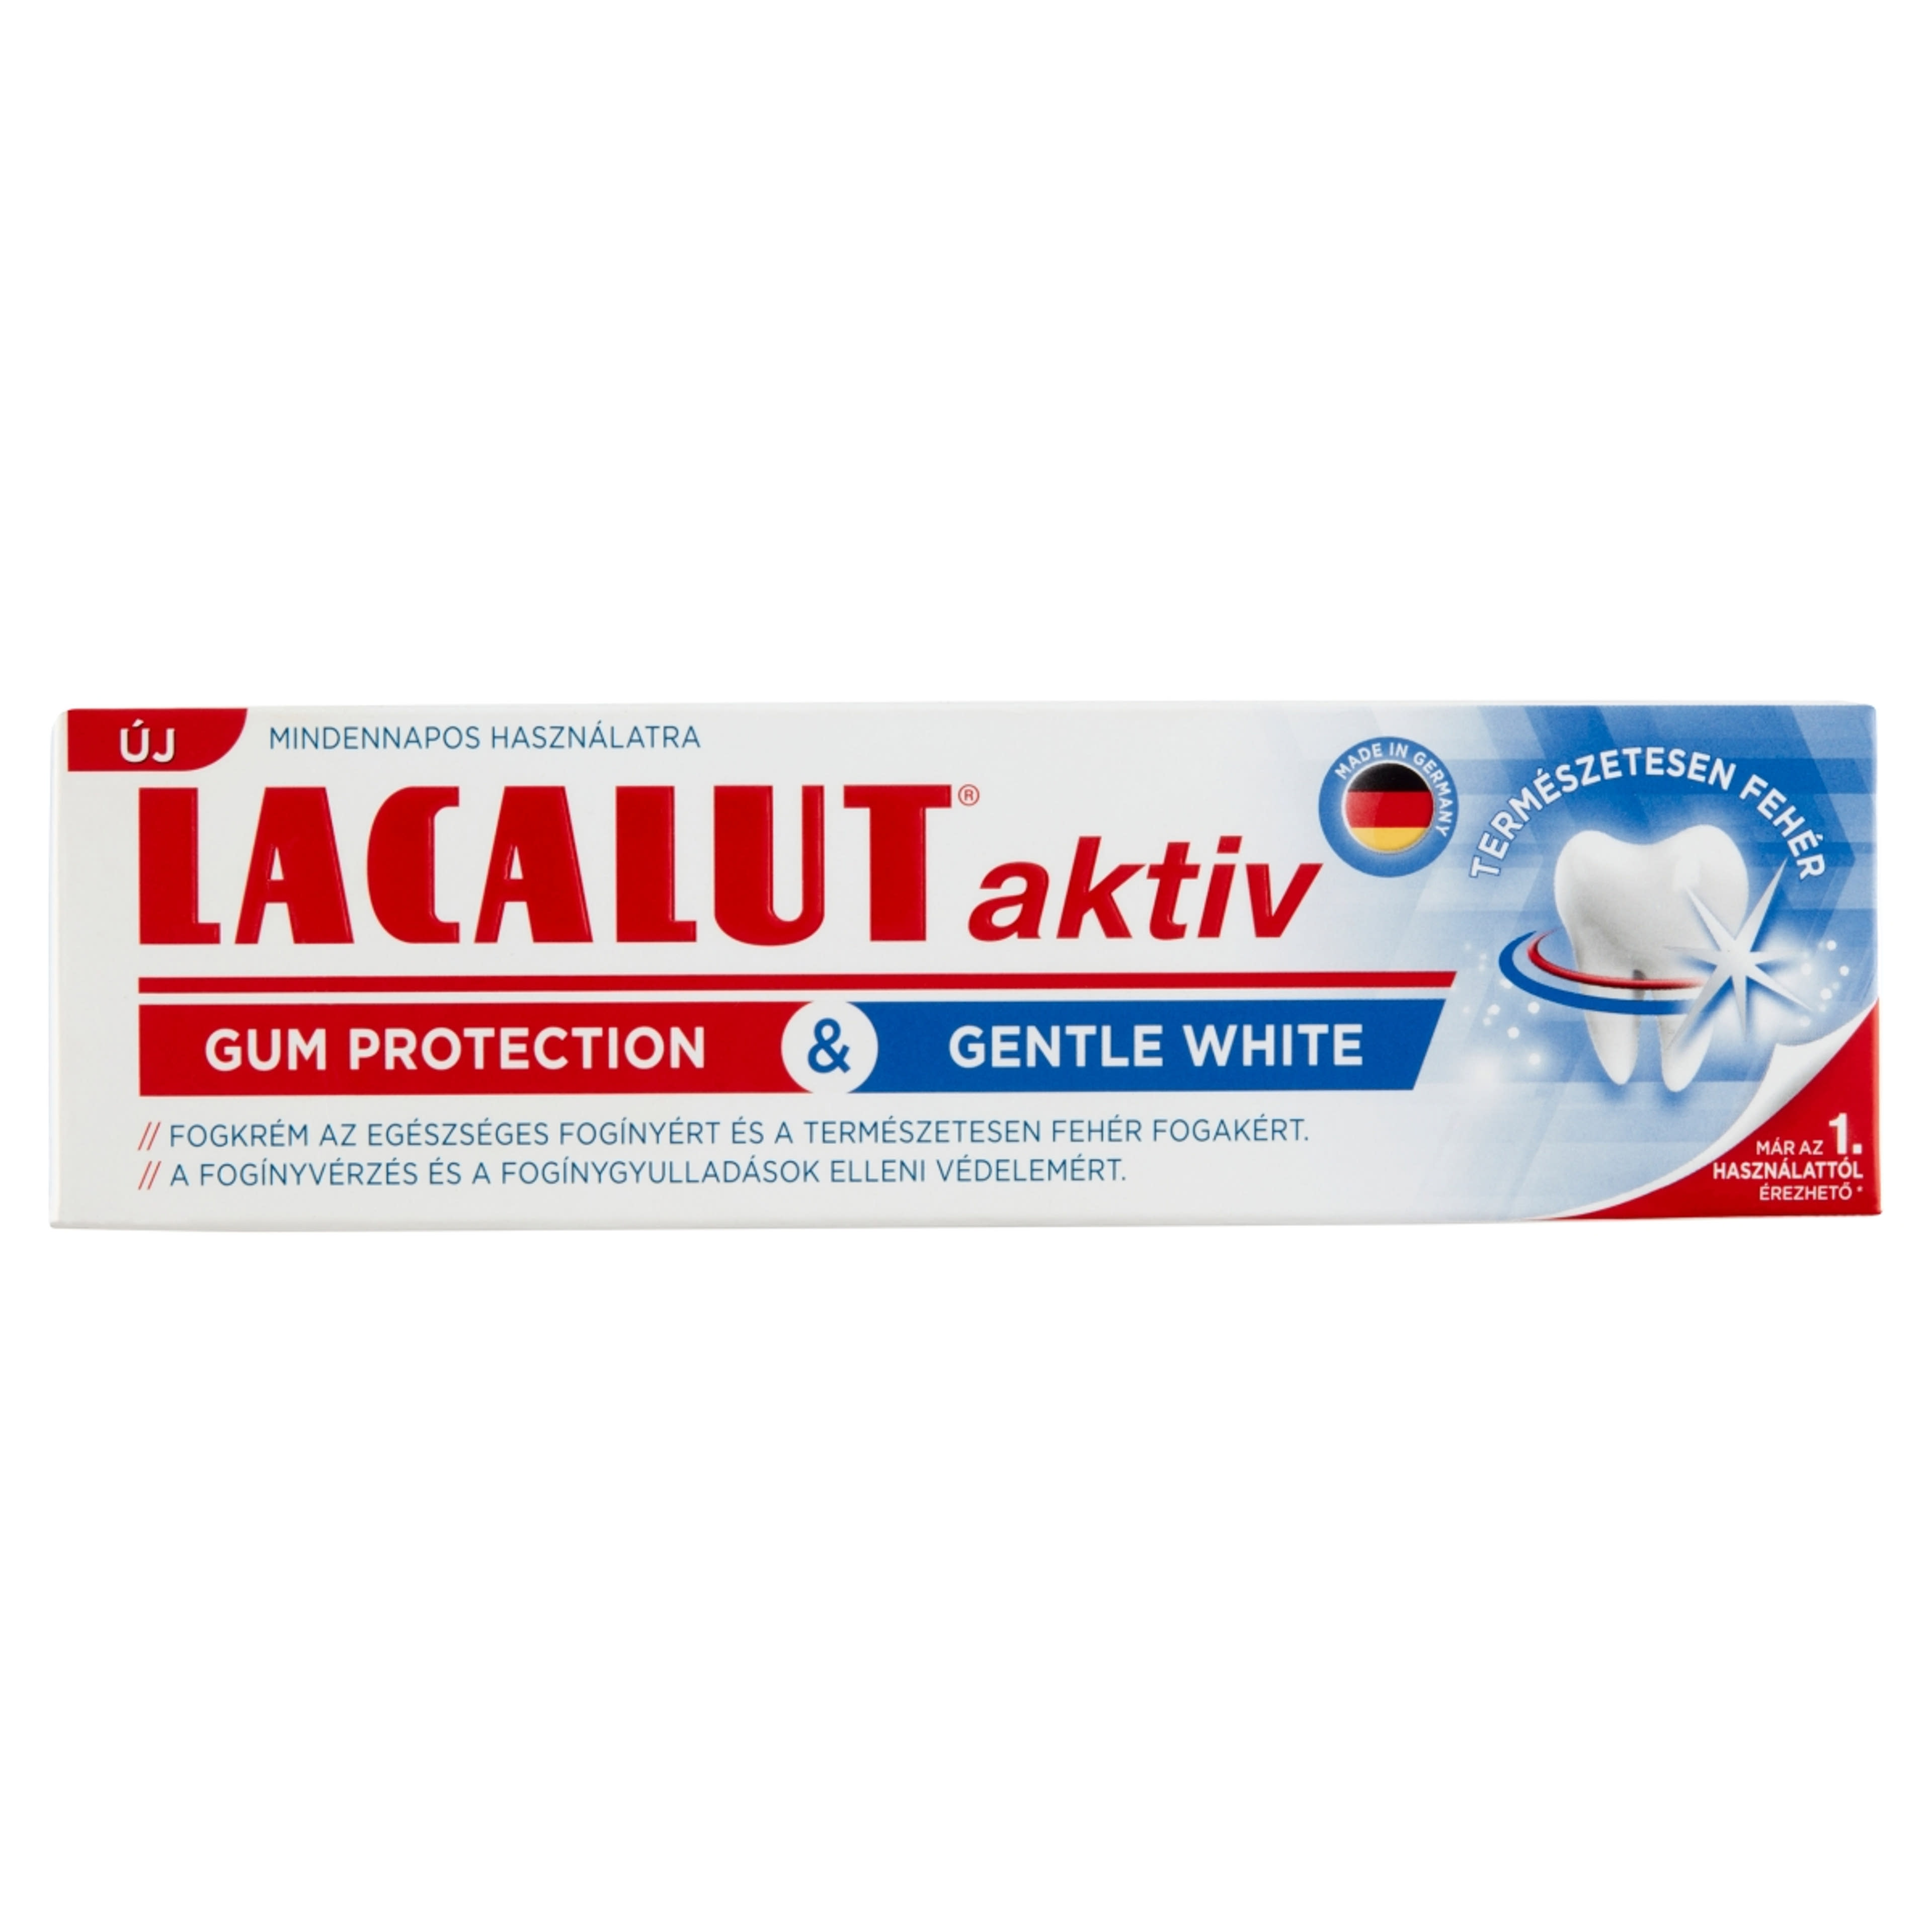 Lacalut Aktiv Gum Protection & Gentle White fogkrém - 75 ml-1